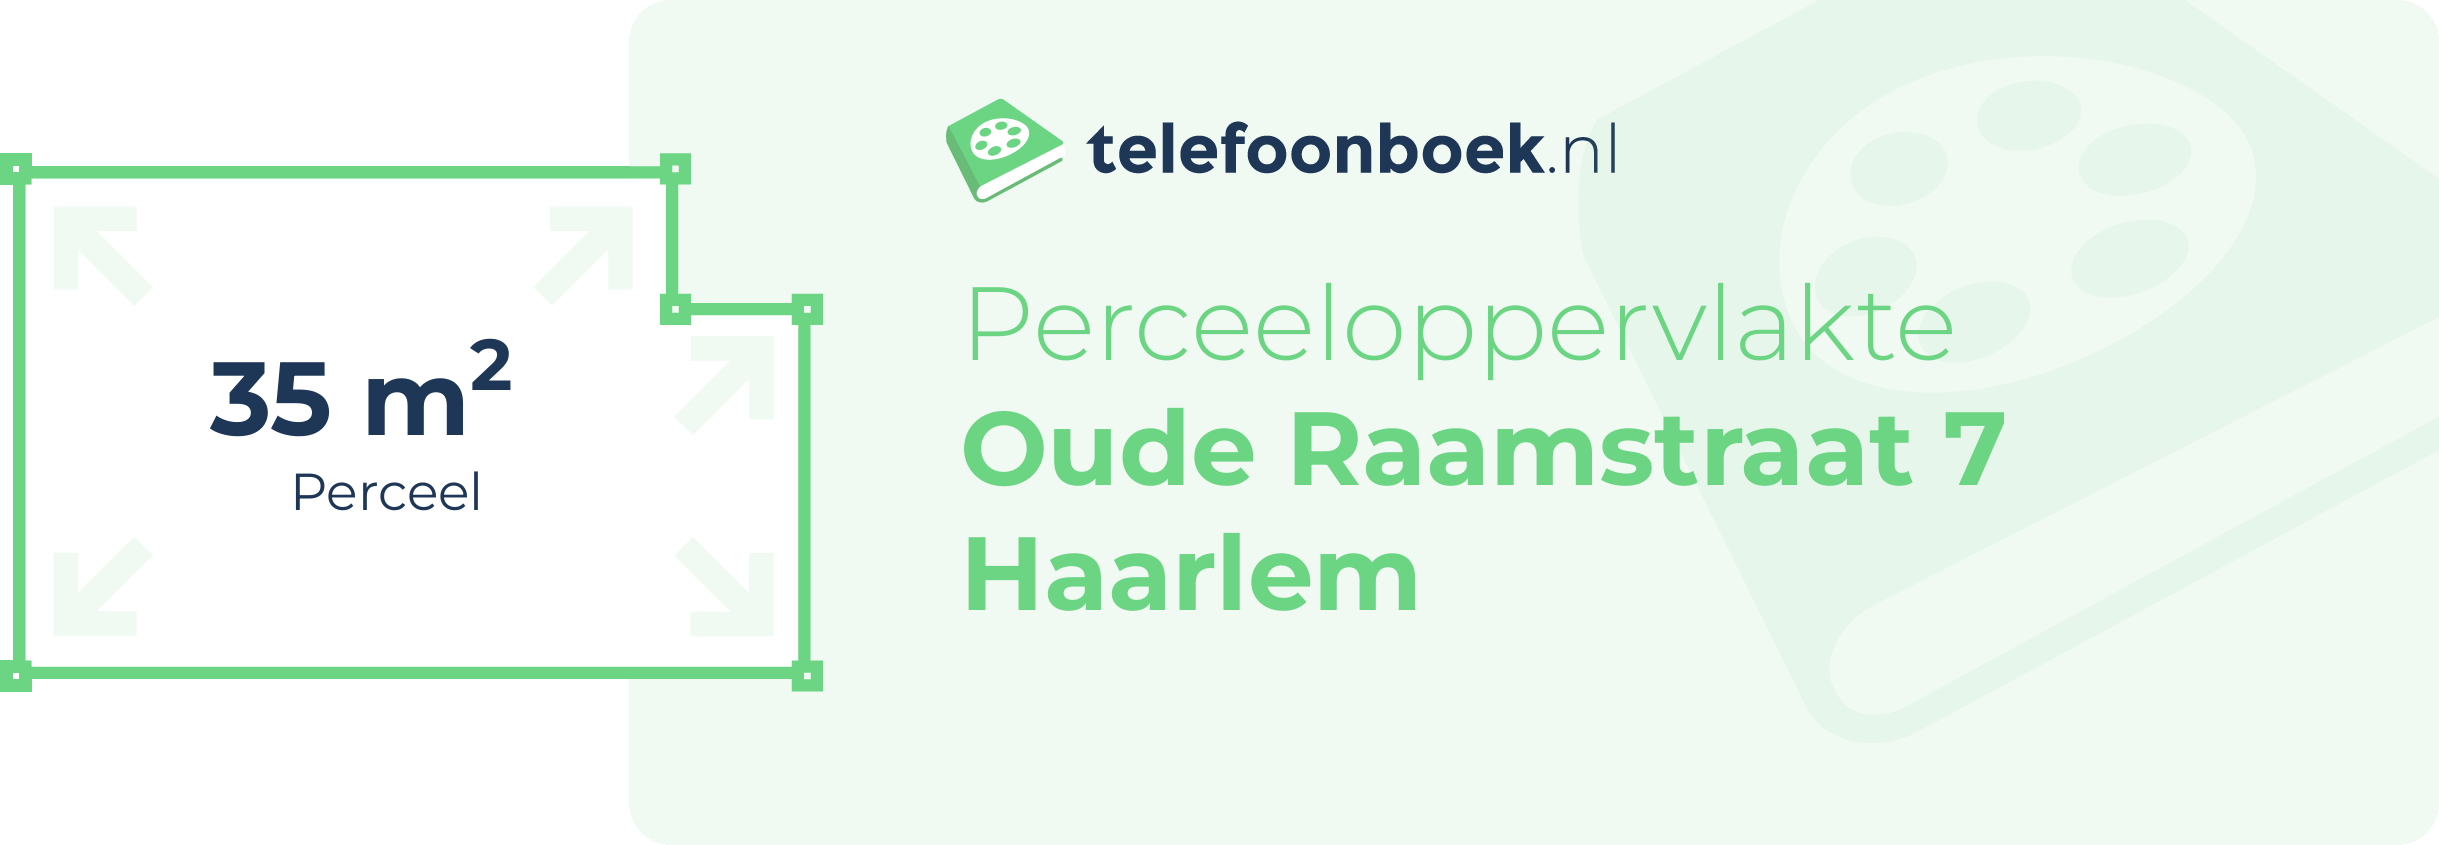 Perceeloppervlakte Oude Raamstraat 7 Haarlem